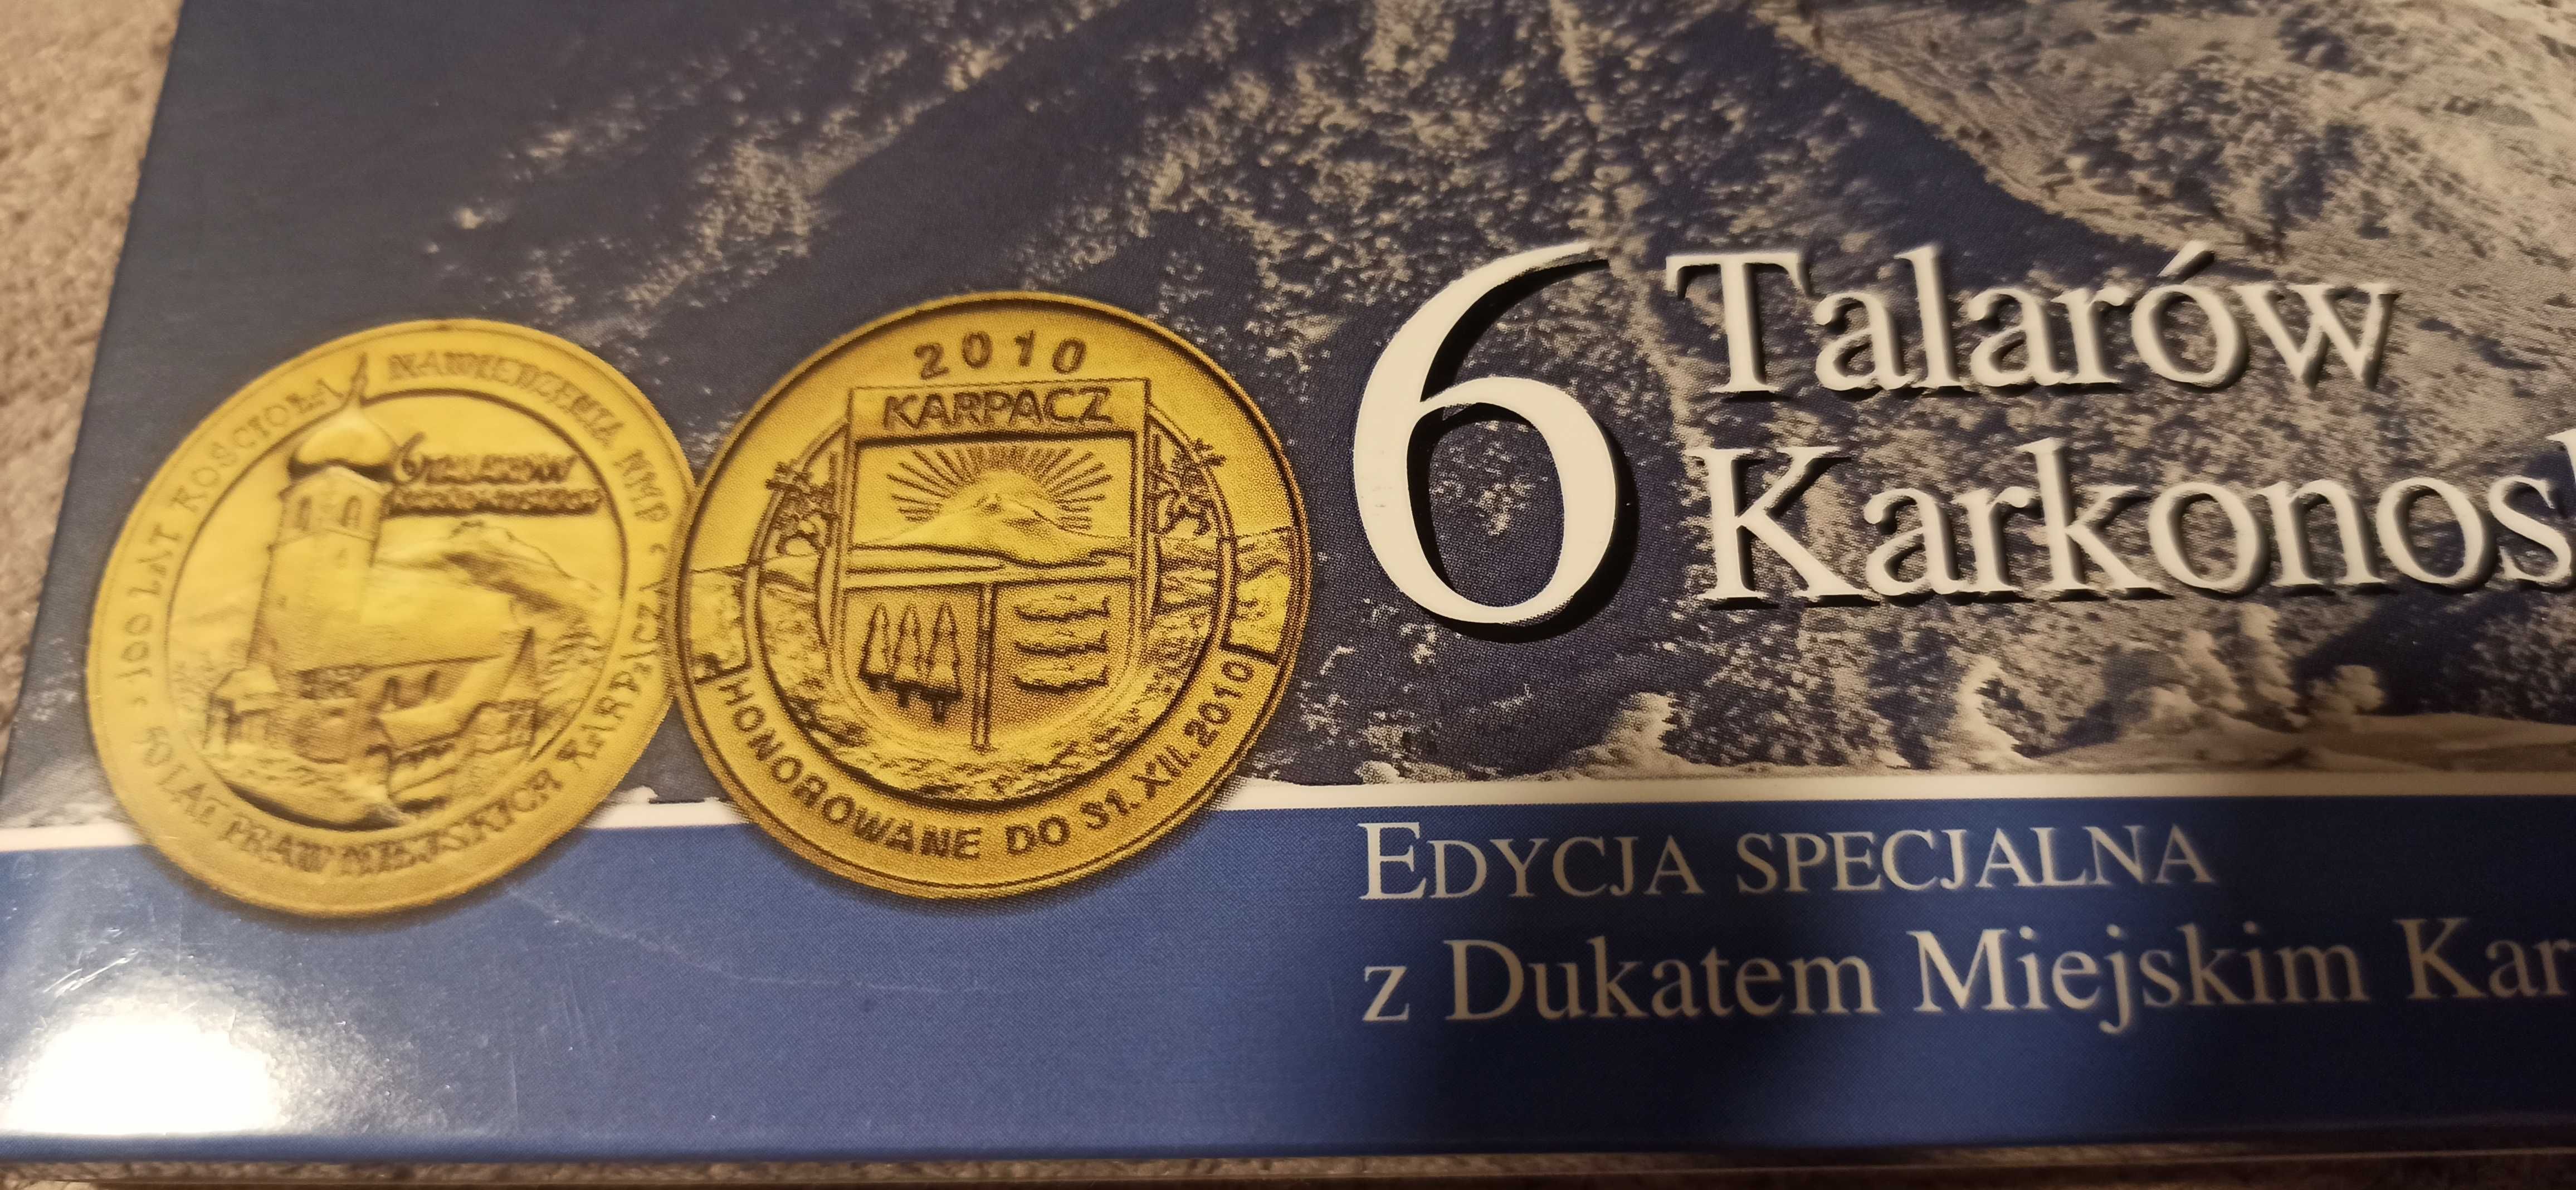 6 talarów karkonoskich - edycja specjalna z dukatem miejskim Karpacza